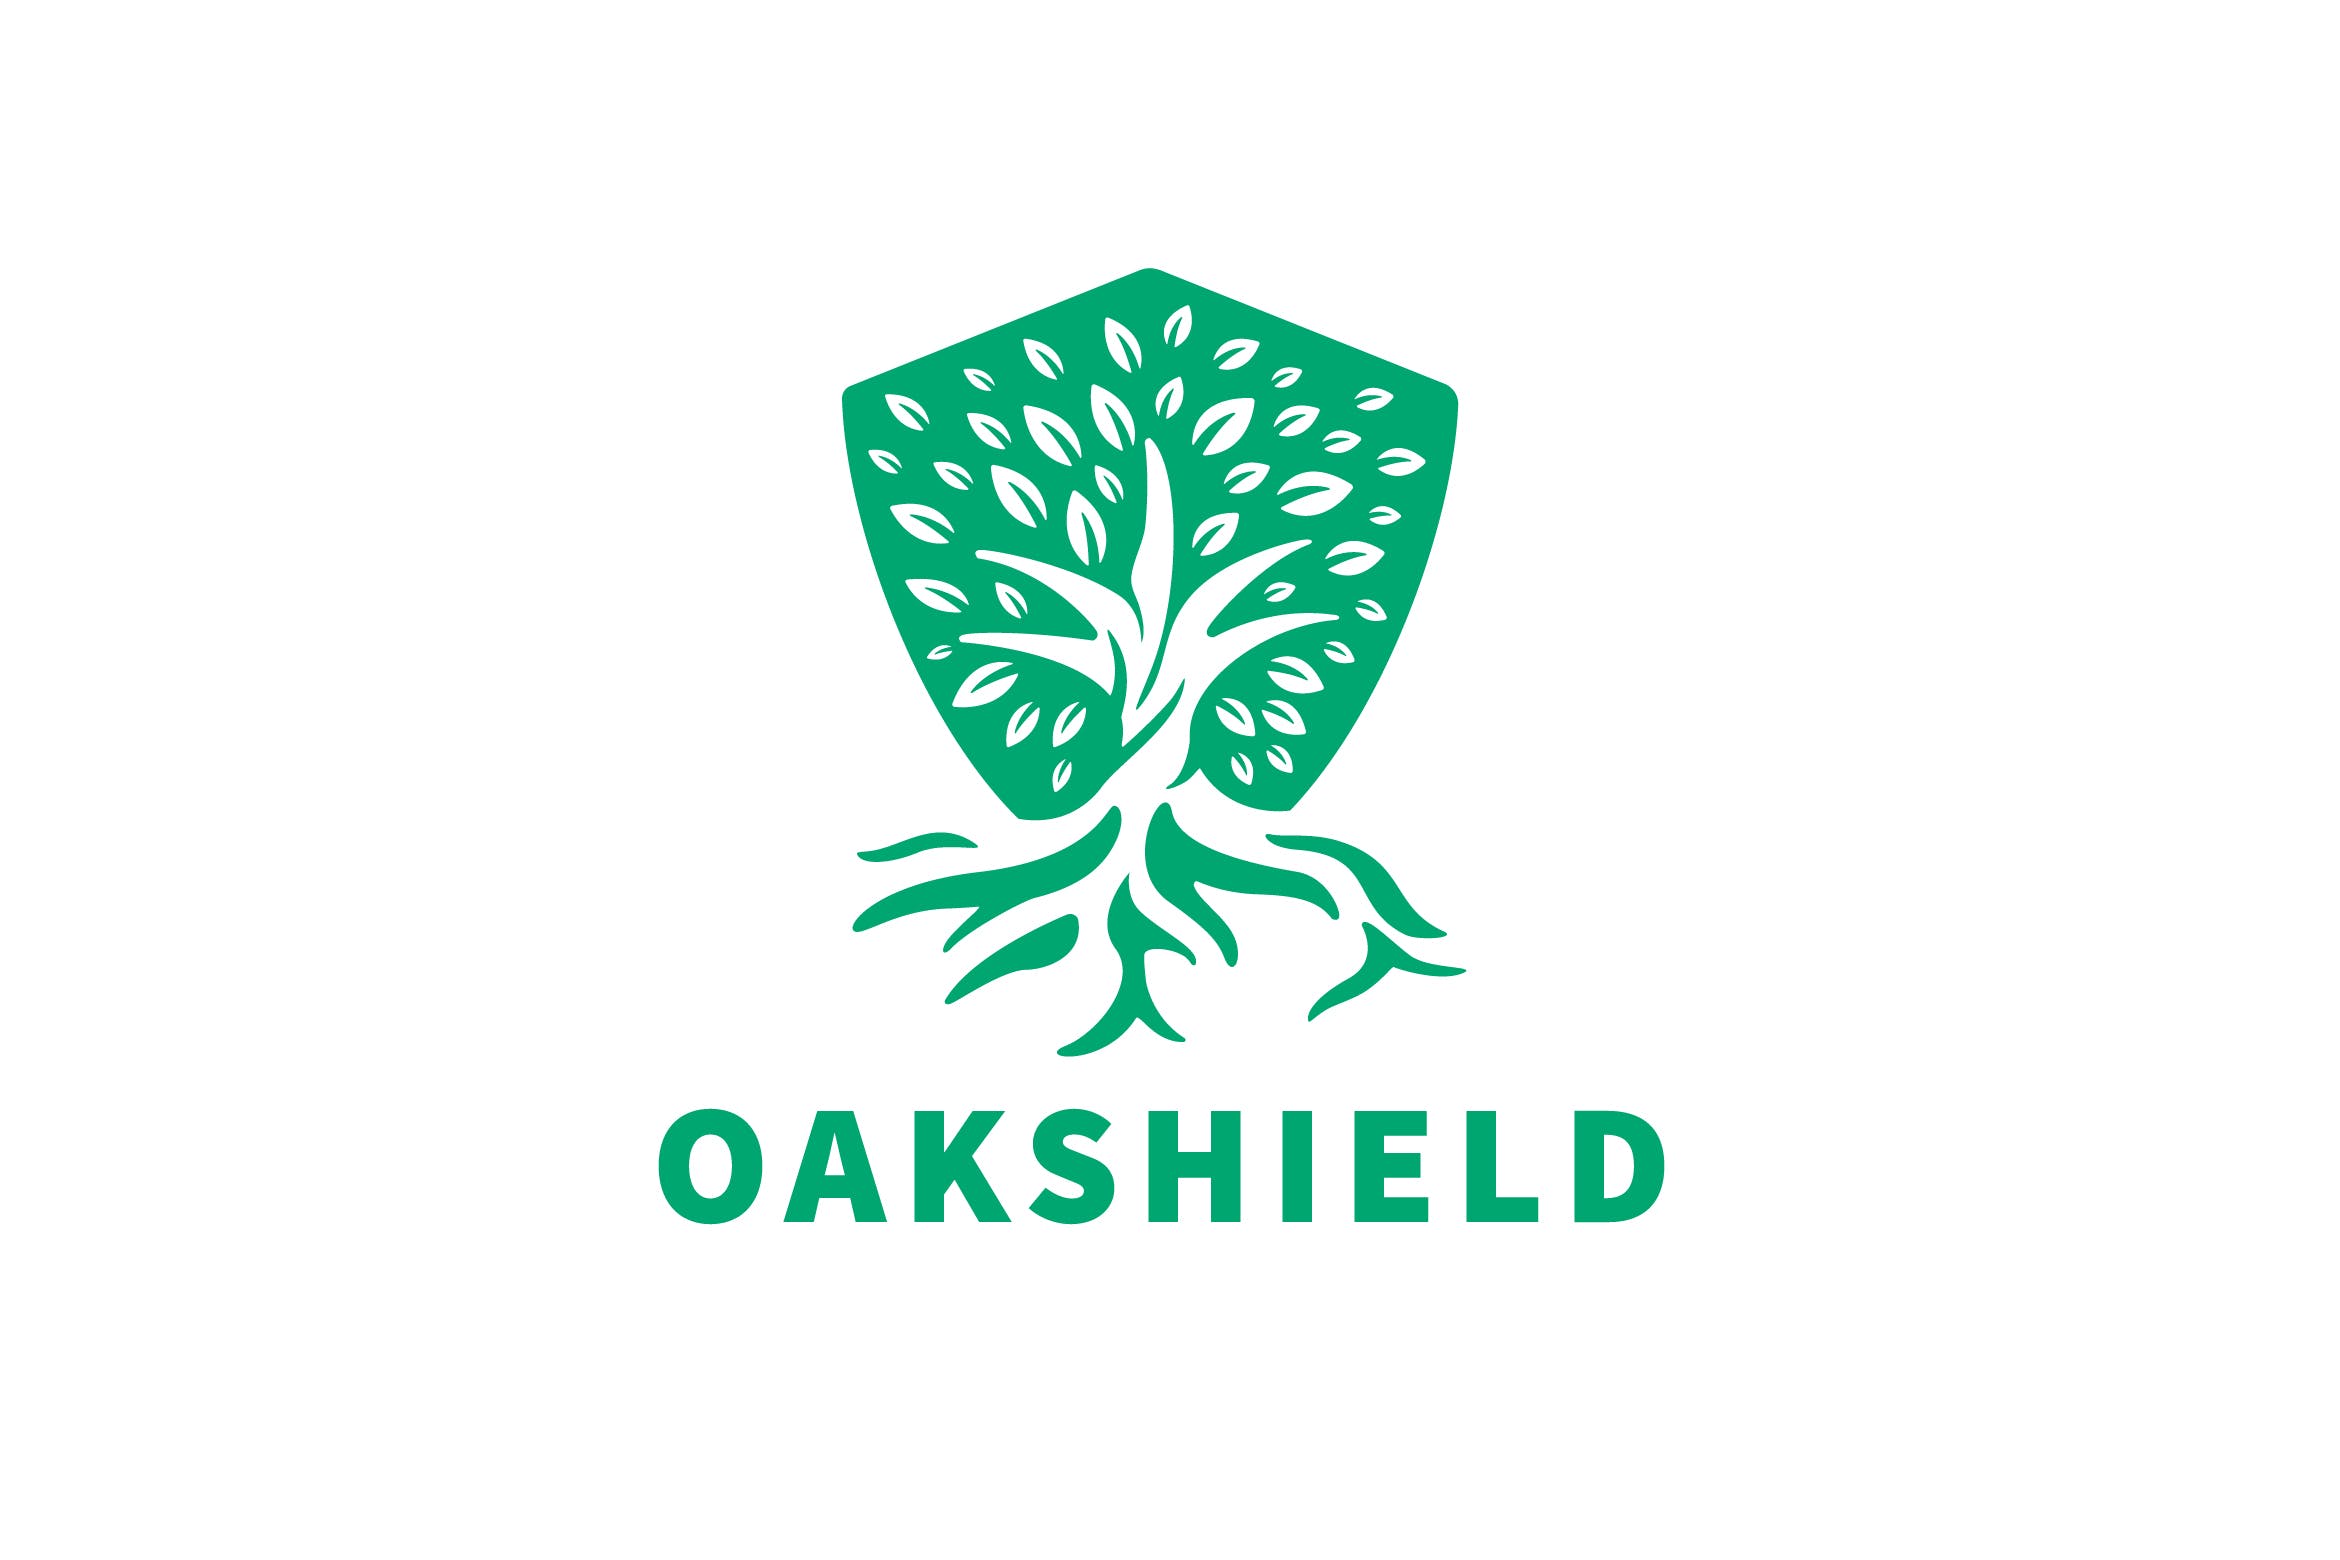 负空间设计风格橡木盾几何图形Logo设计素材库精选模板 Oak Shield Negative Space Logo插图